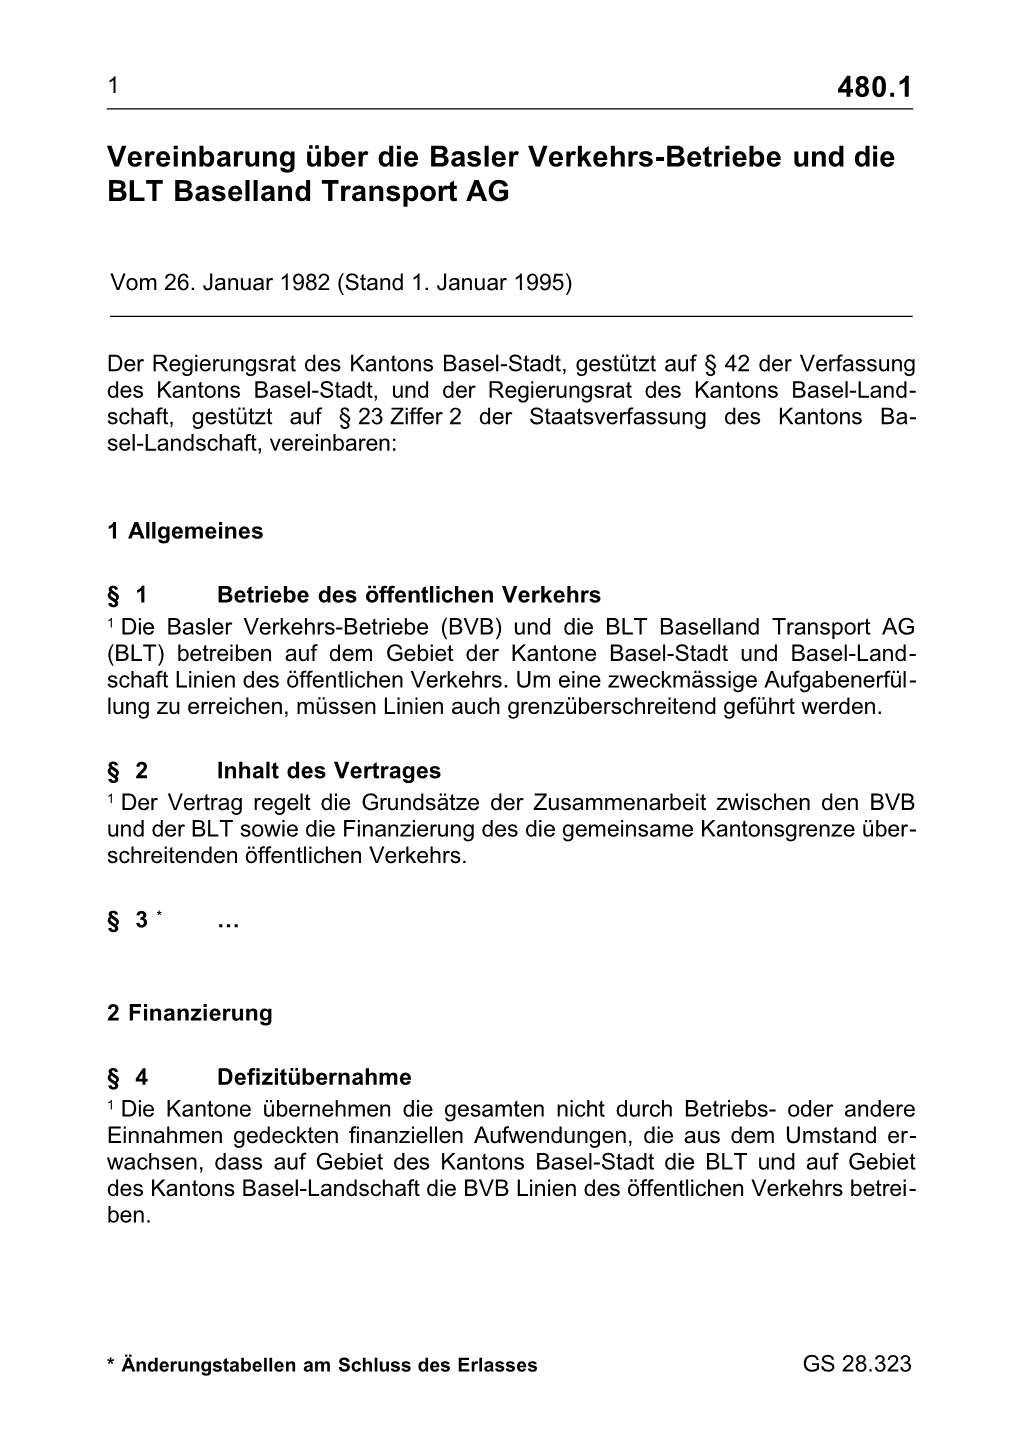 Vereinbarung Über Die Basler Verkehrs-Betriebe Und Die BLT Baselland Transport AG